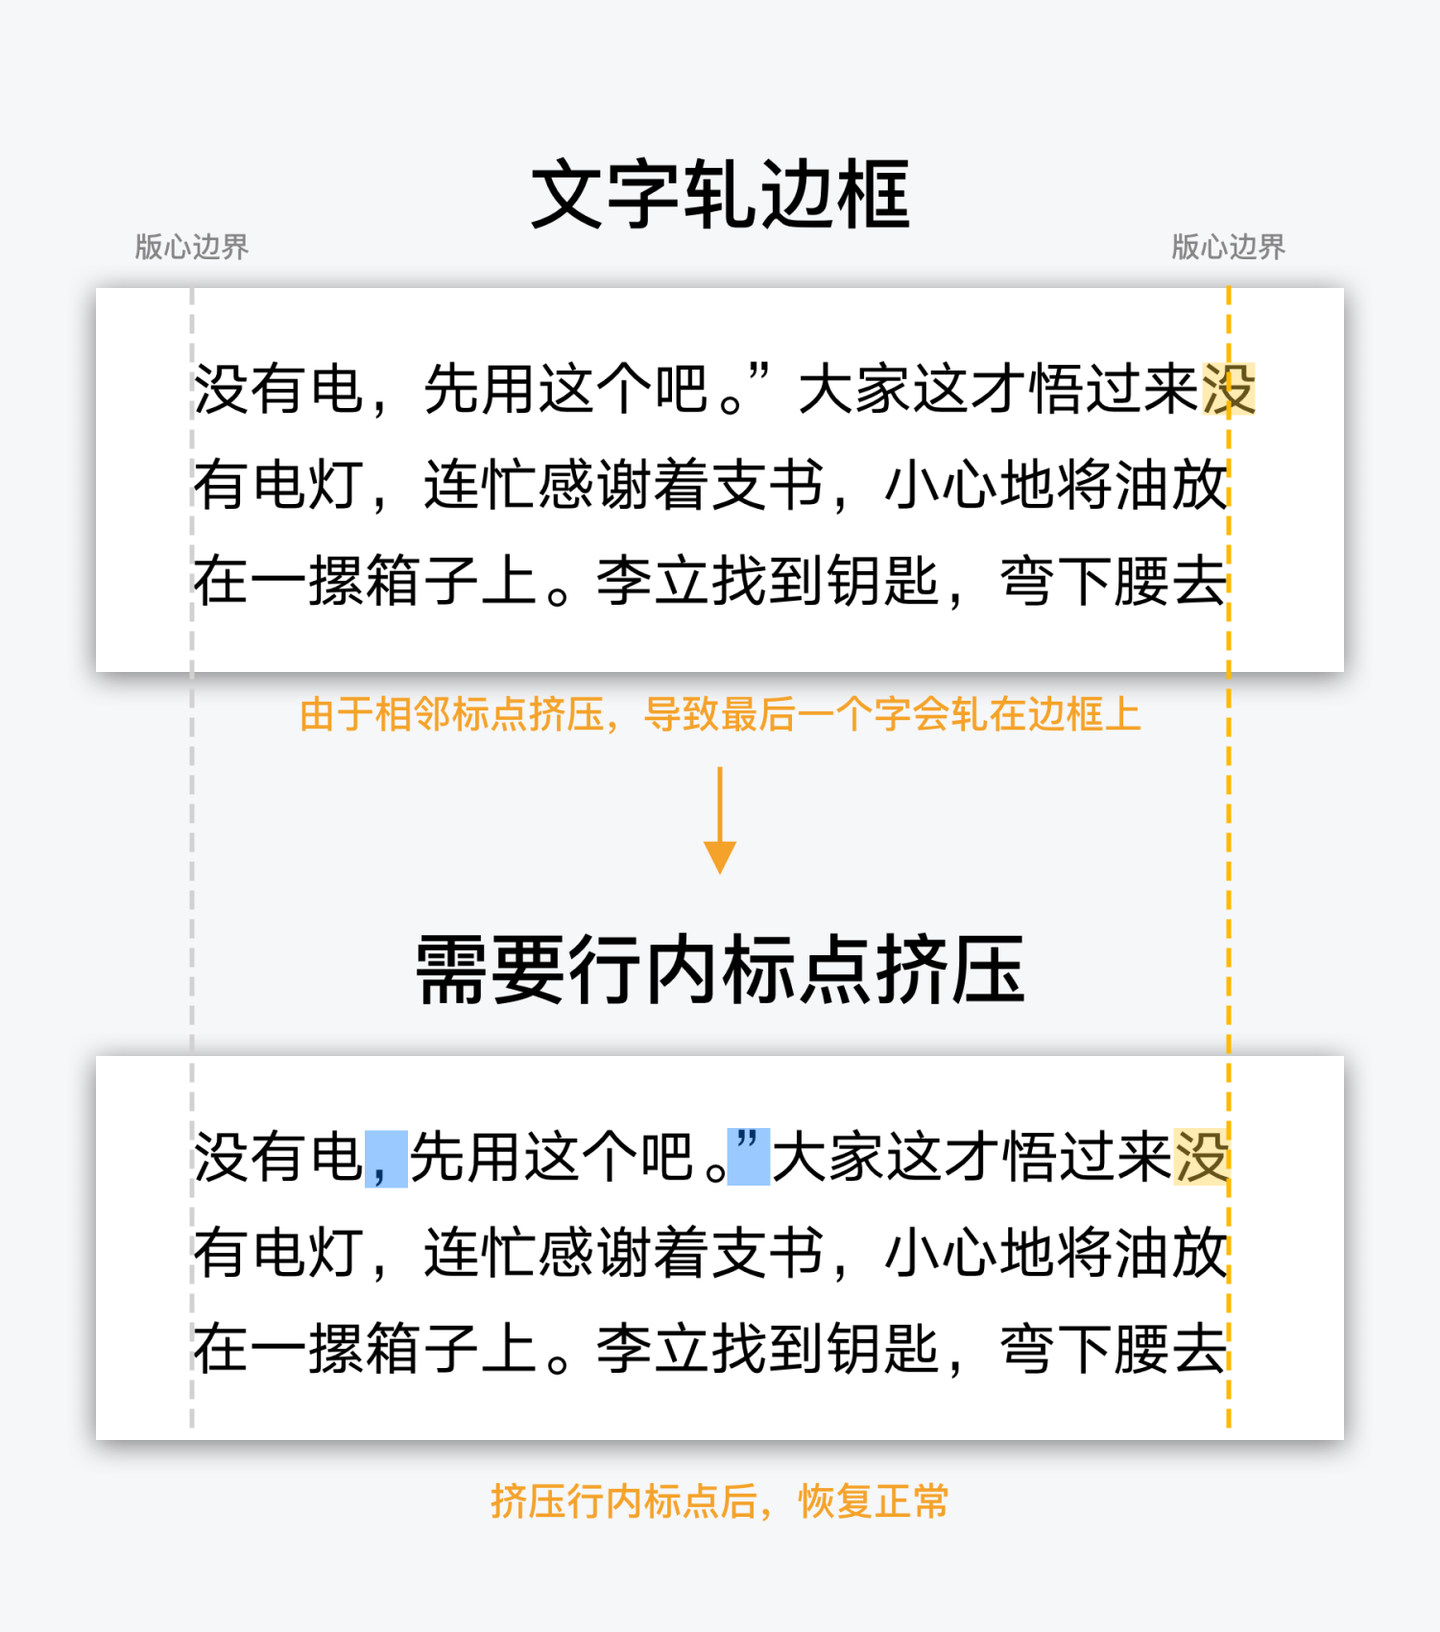 移动阅读软件 中文排印上那些你不知道的事 知乎